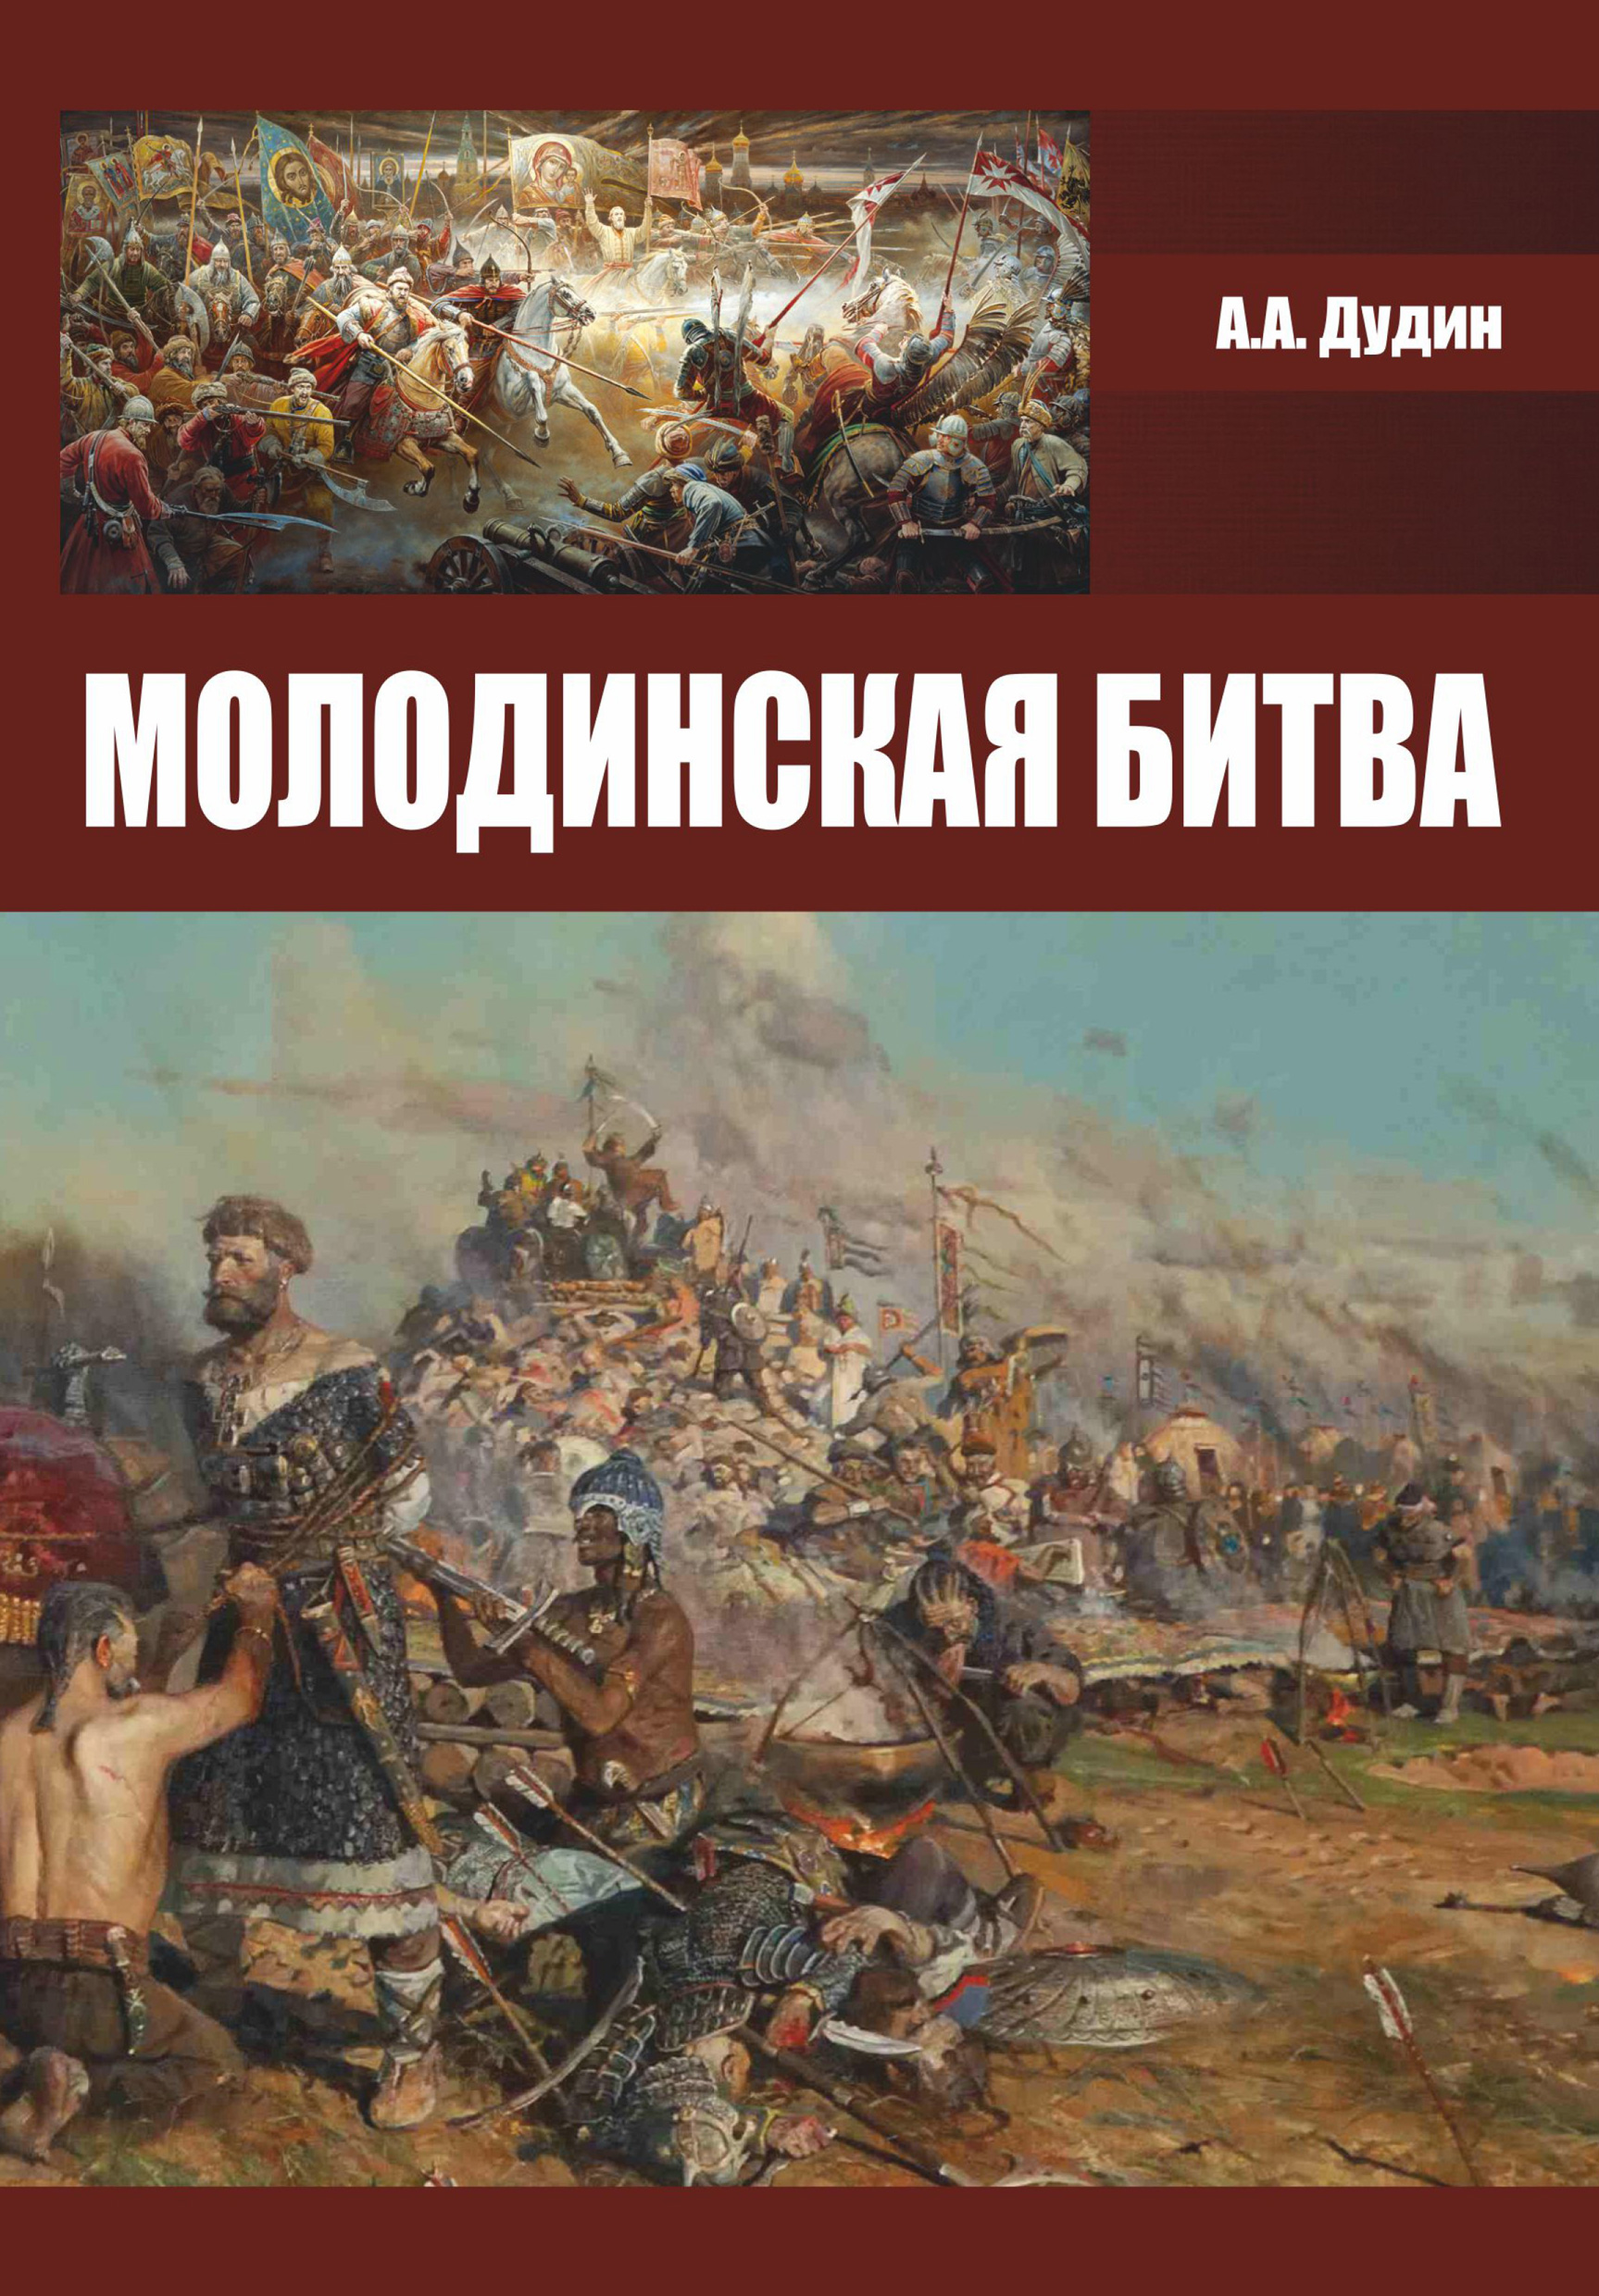 Книга Молодинская битва из серии , созданная Александр Дудин, может относится к жанру История. Стоимость книги Молодинская битва  с идентификатором 22780260 составляет 139.00 руб.